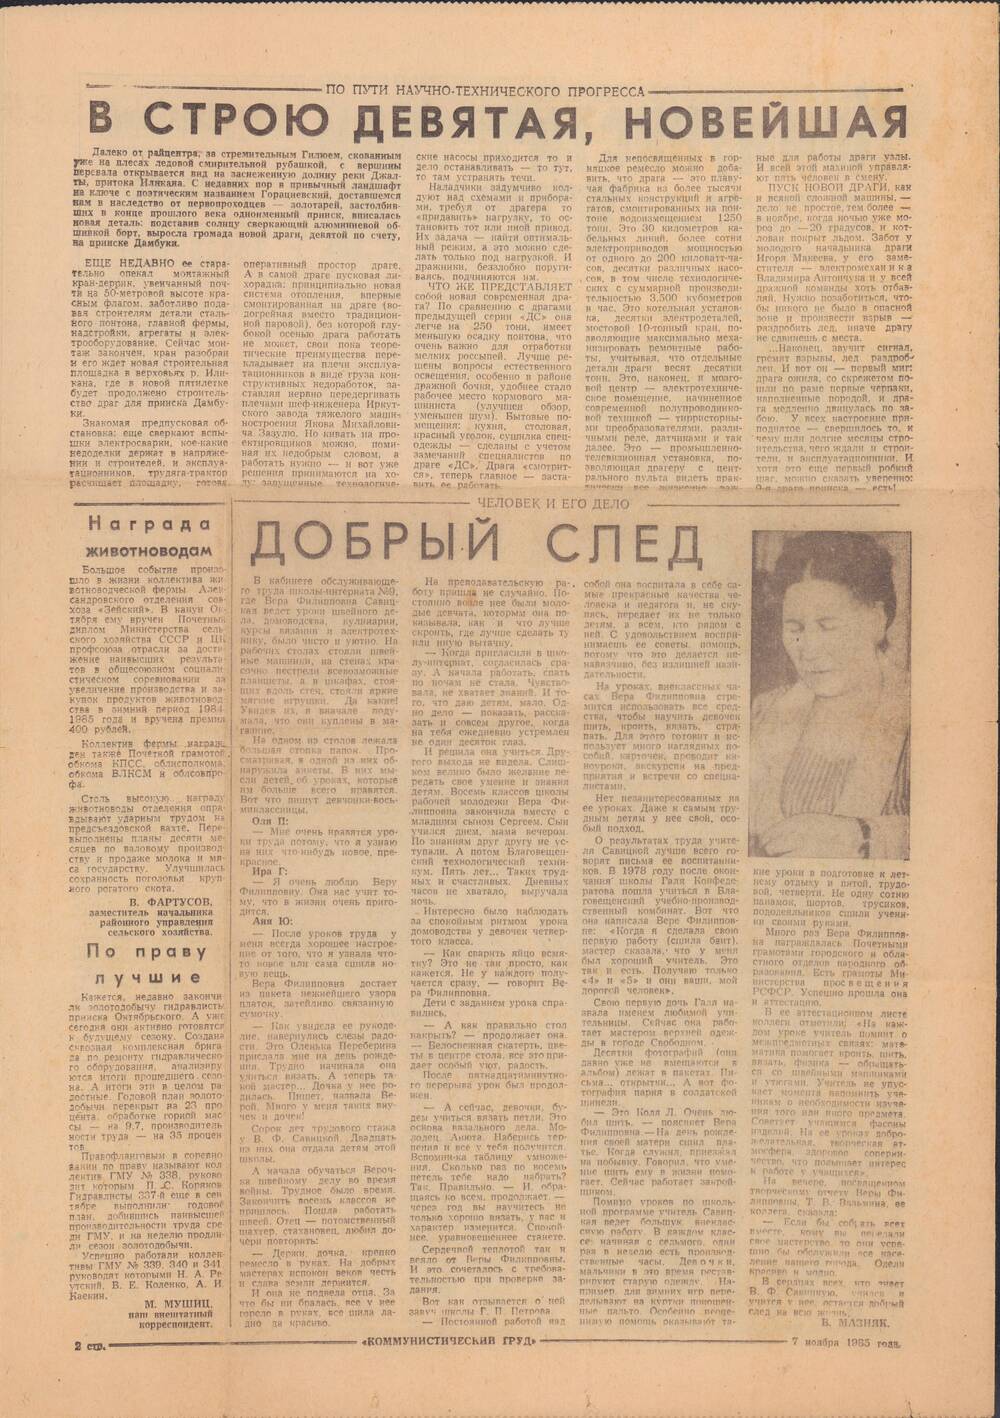 Газета Коммунистический труд №134 от 7 ноября 1985 года с публикацией В. Мазняк Добрый след.